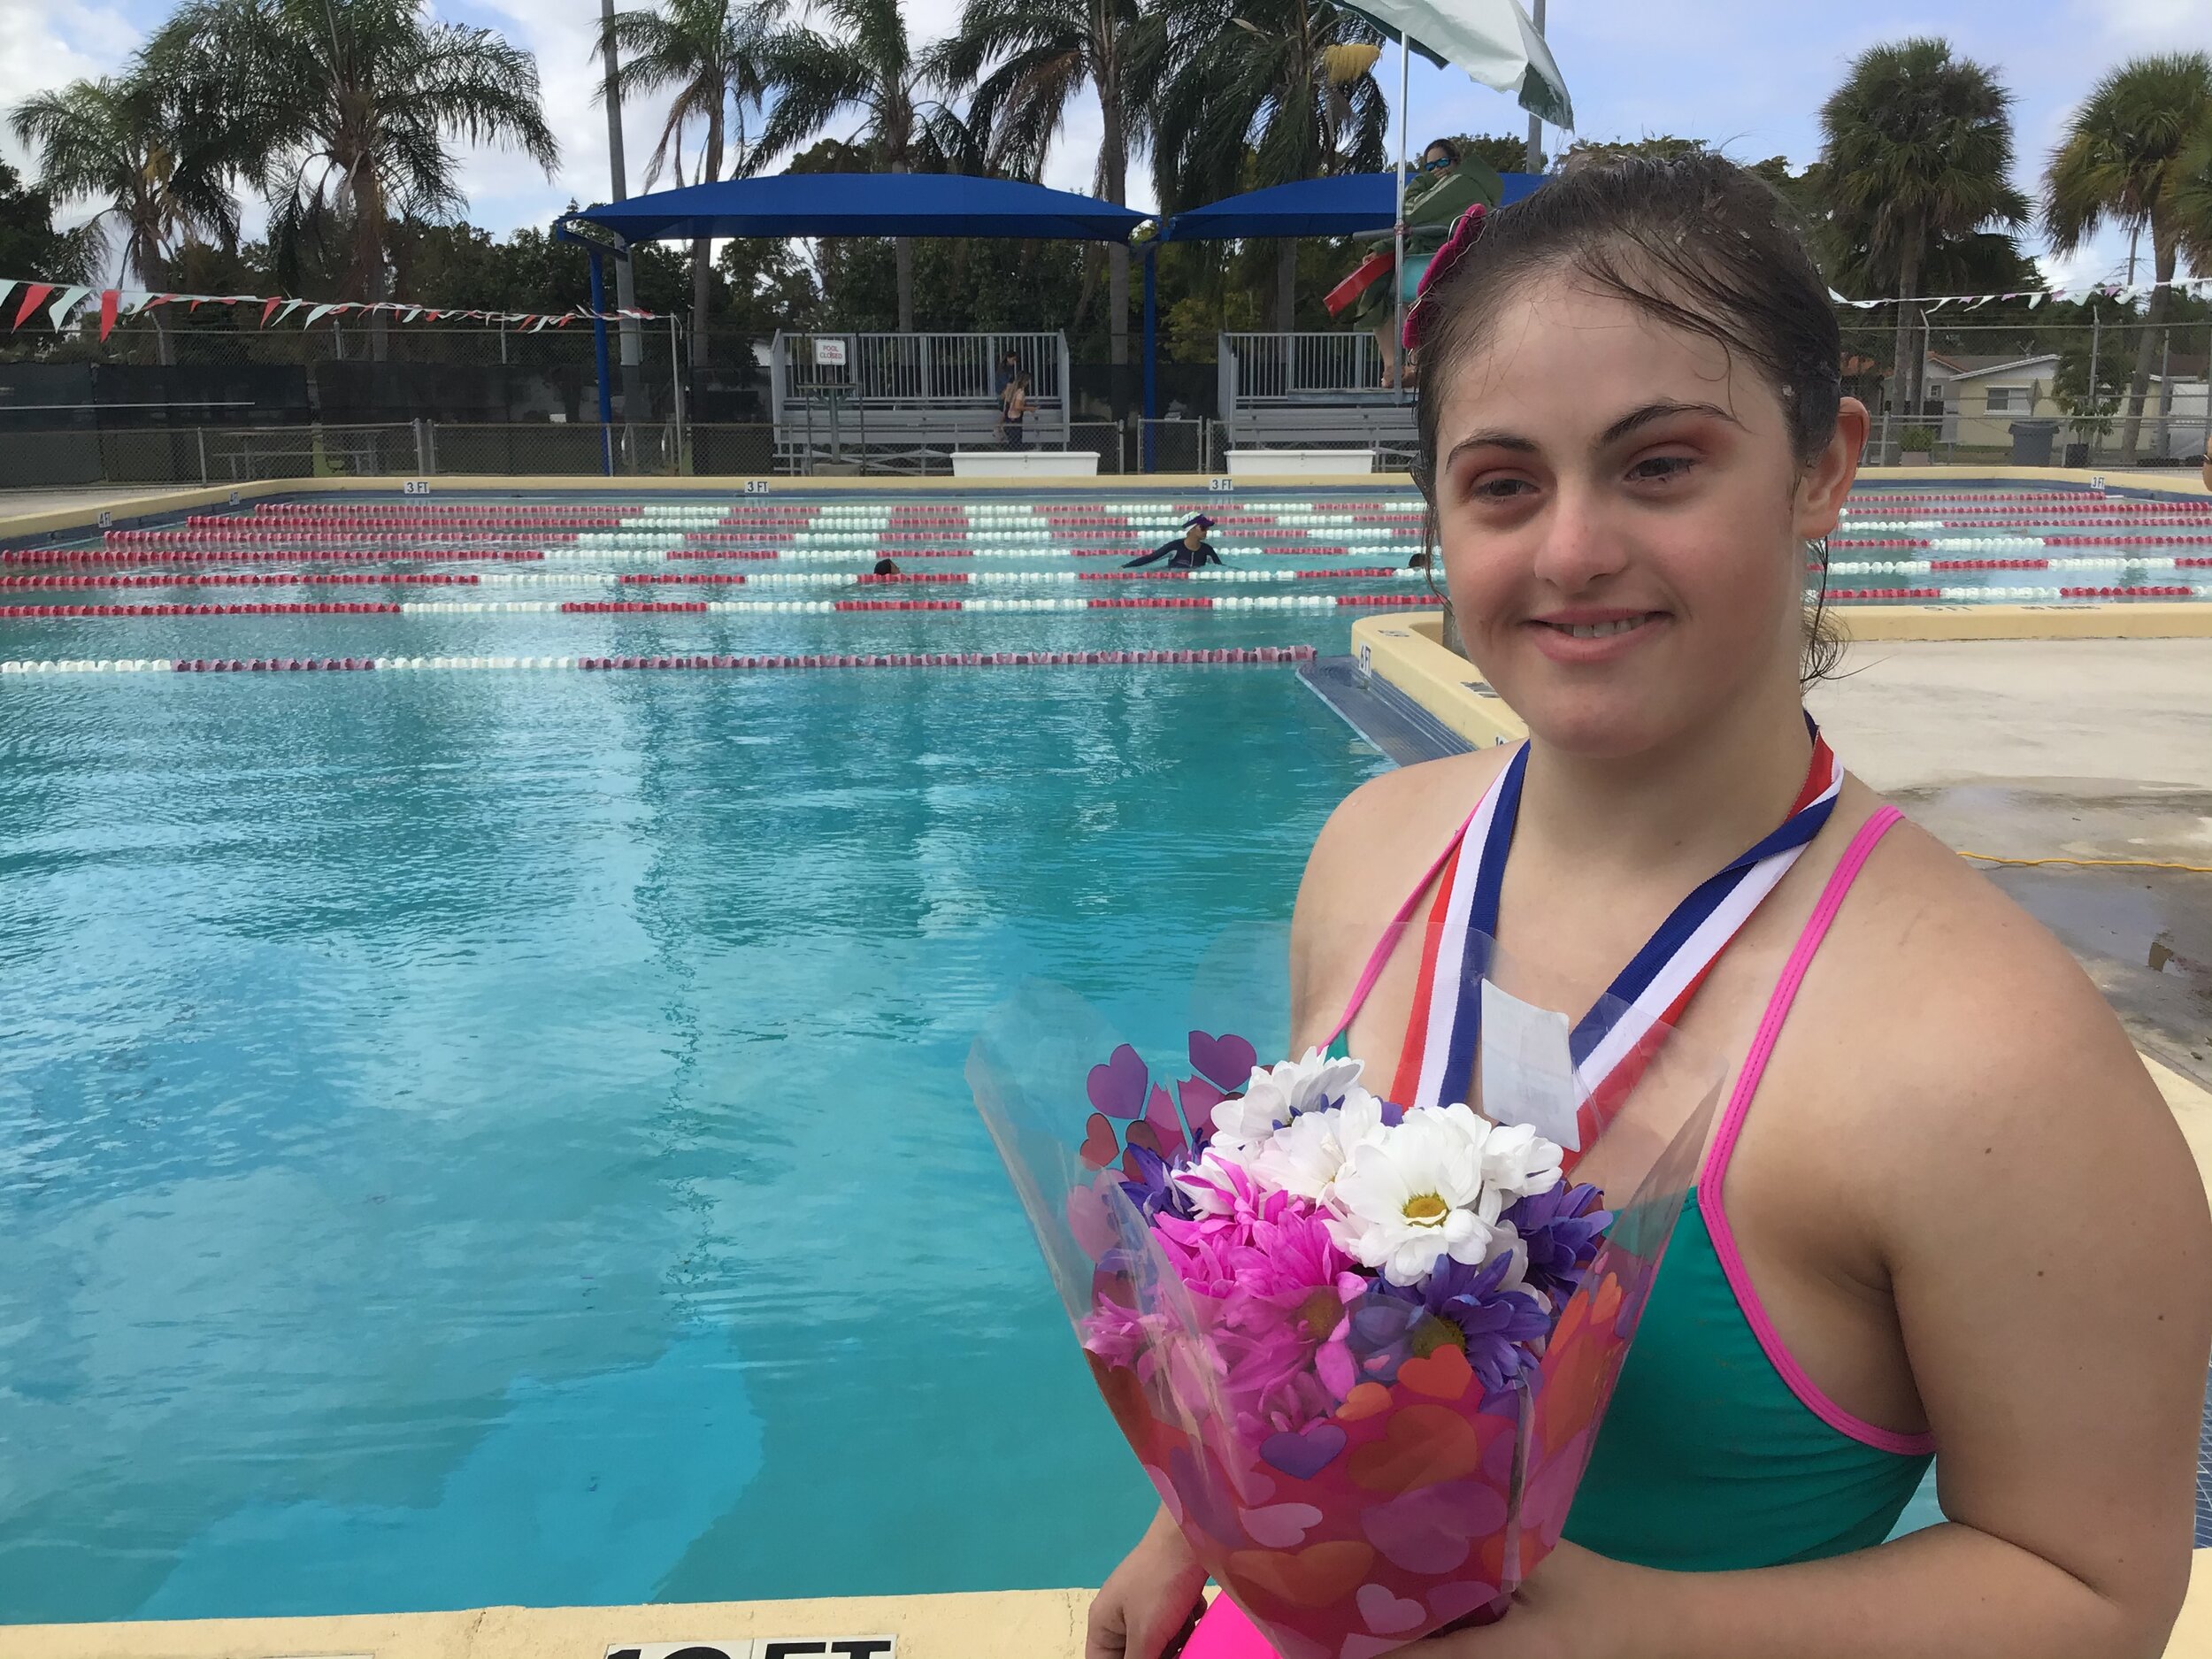 Valeria with flowers medal by pool.JPG